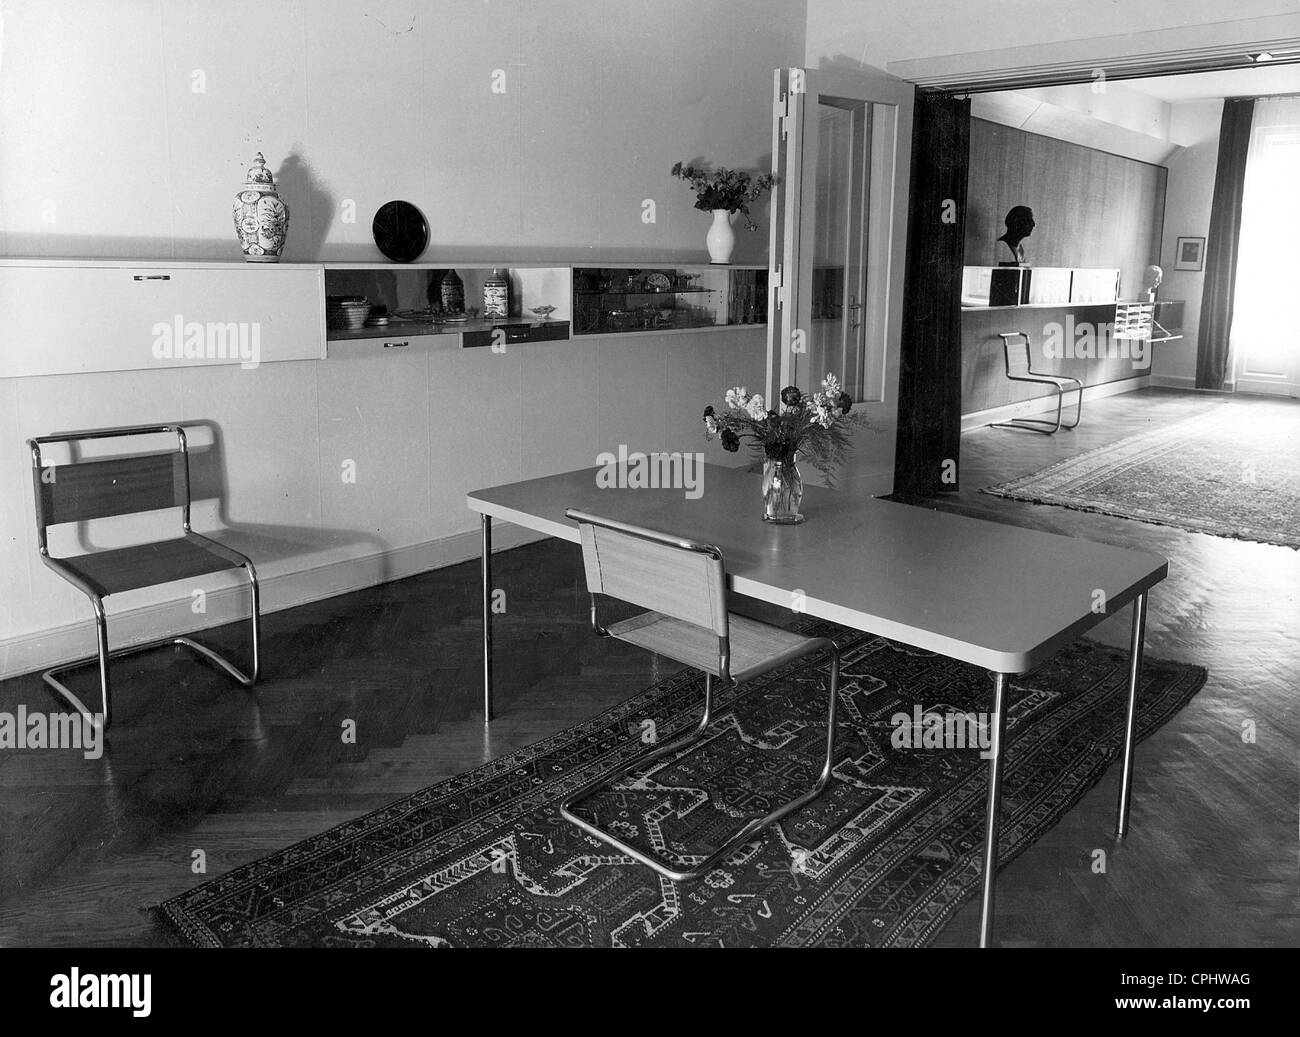 Decoración interior en estilo Bauhaus creada por Marcel Breuer Foto de stock